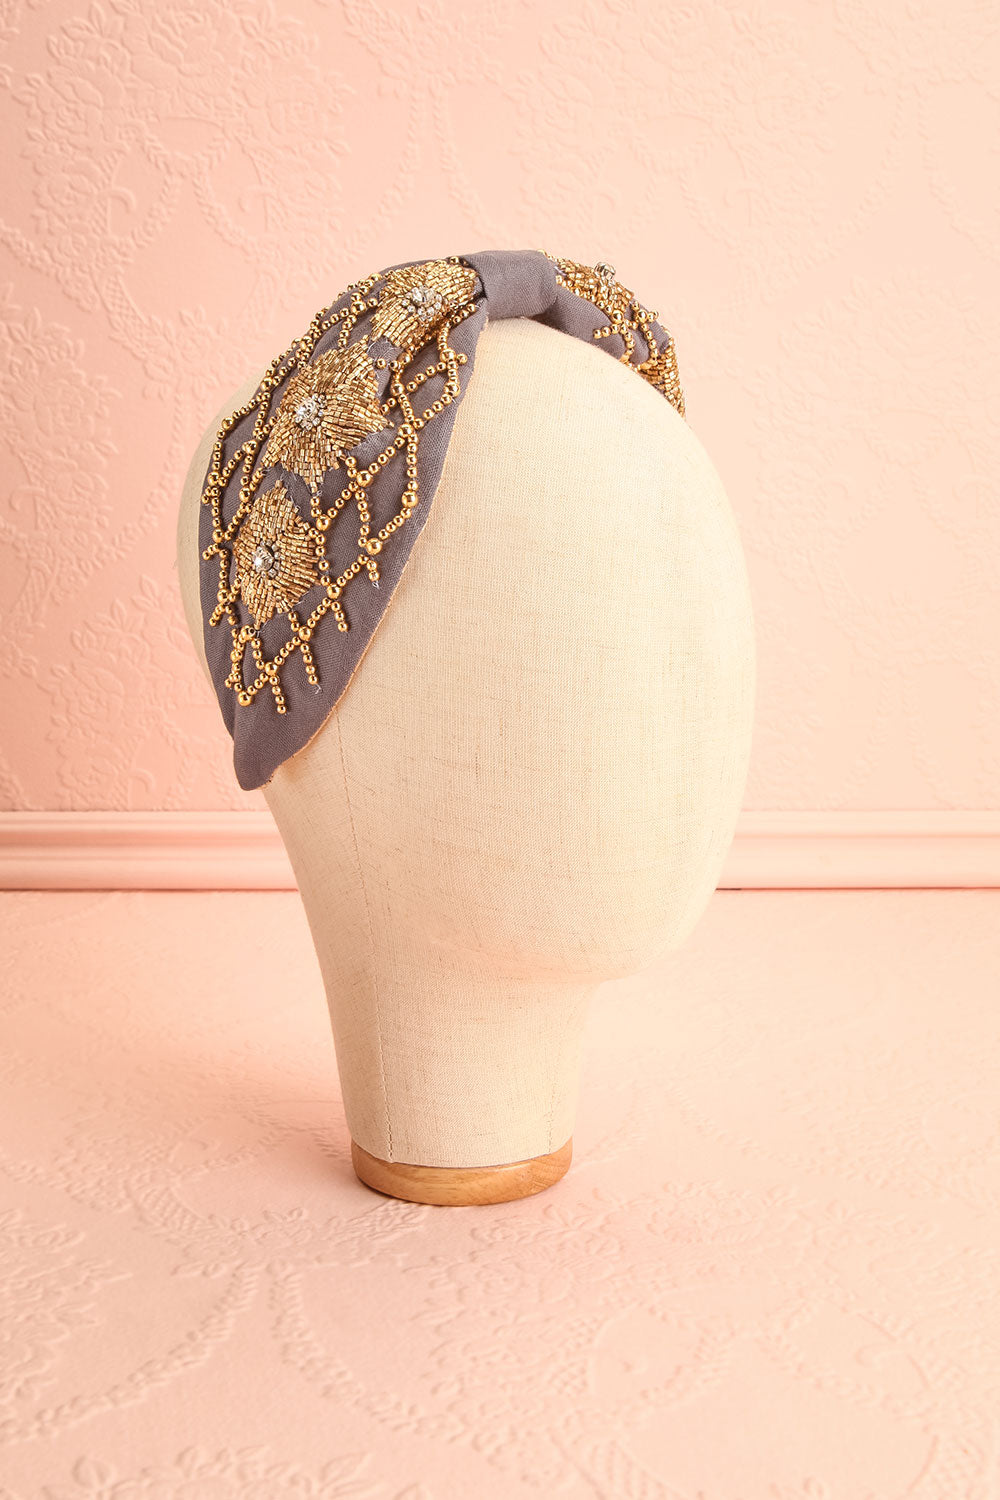 Dolgoprudny Gray Embellished Flower Headband